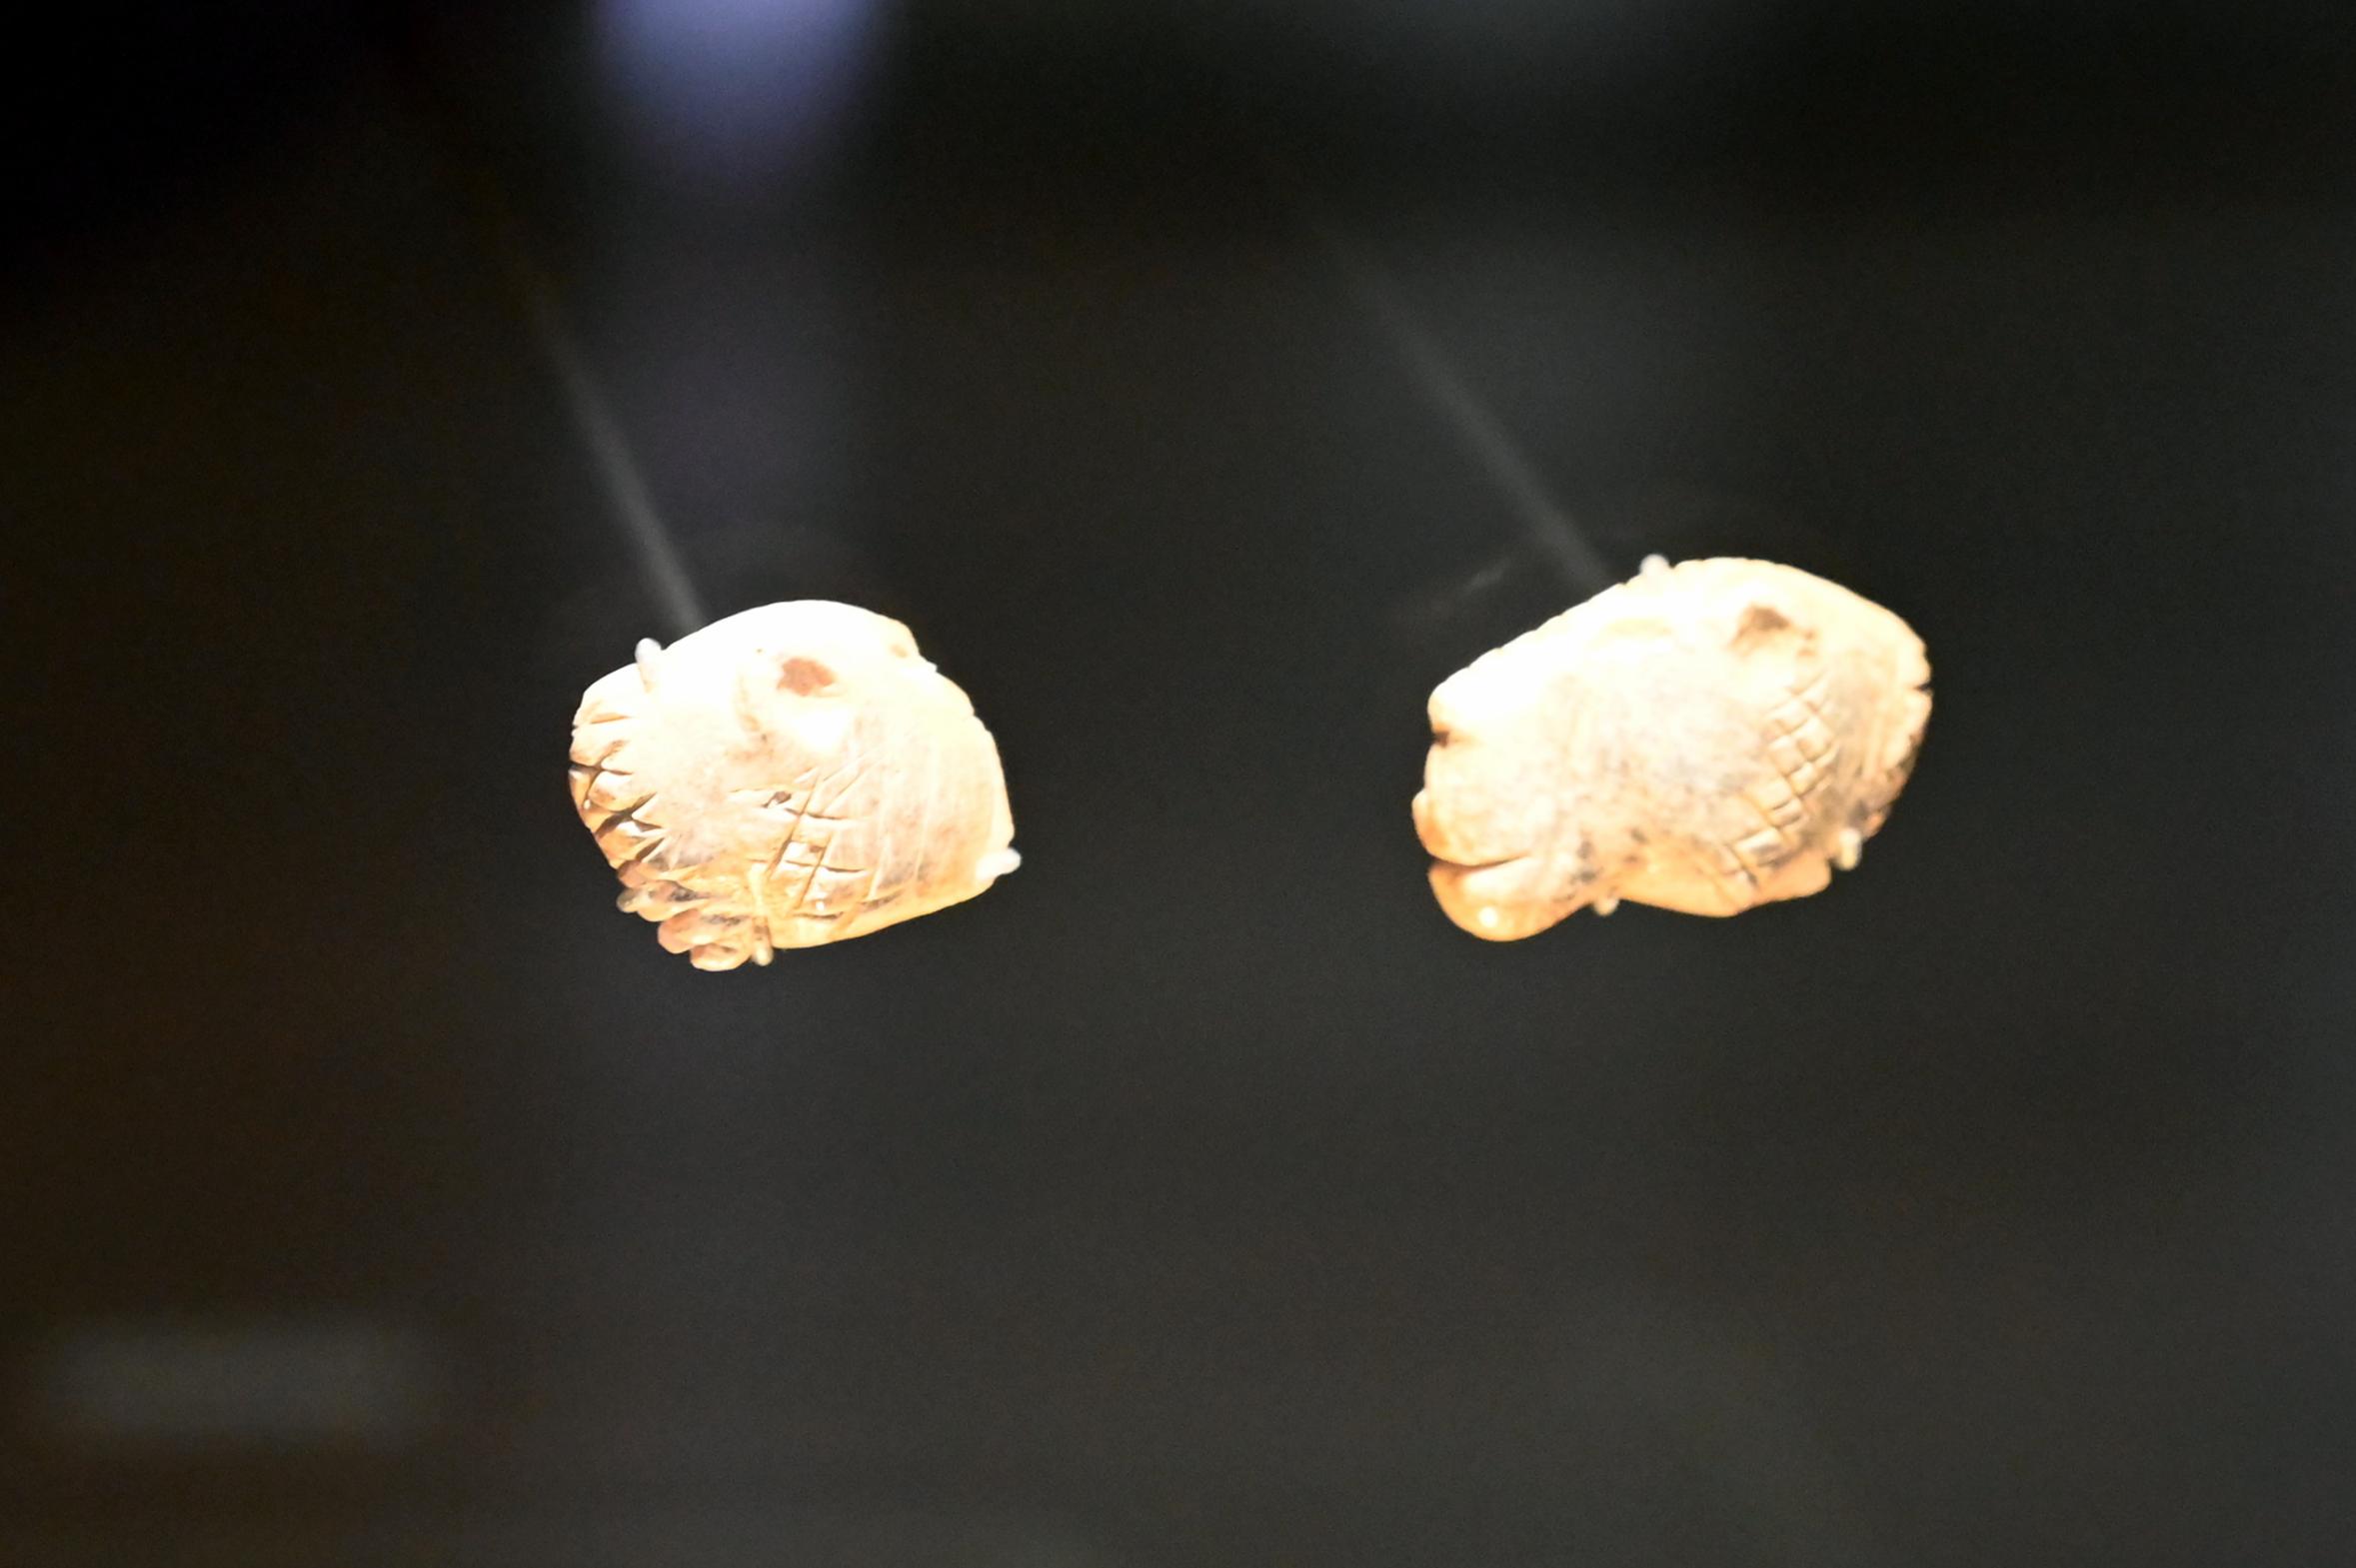 Löwenköpfen, 38000 - 33000 v. Chr., Bild 2/4